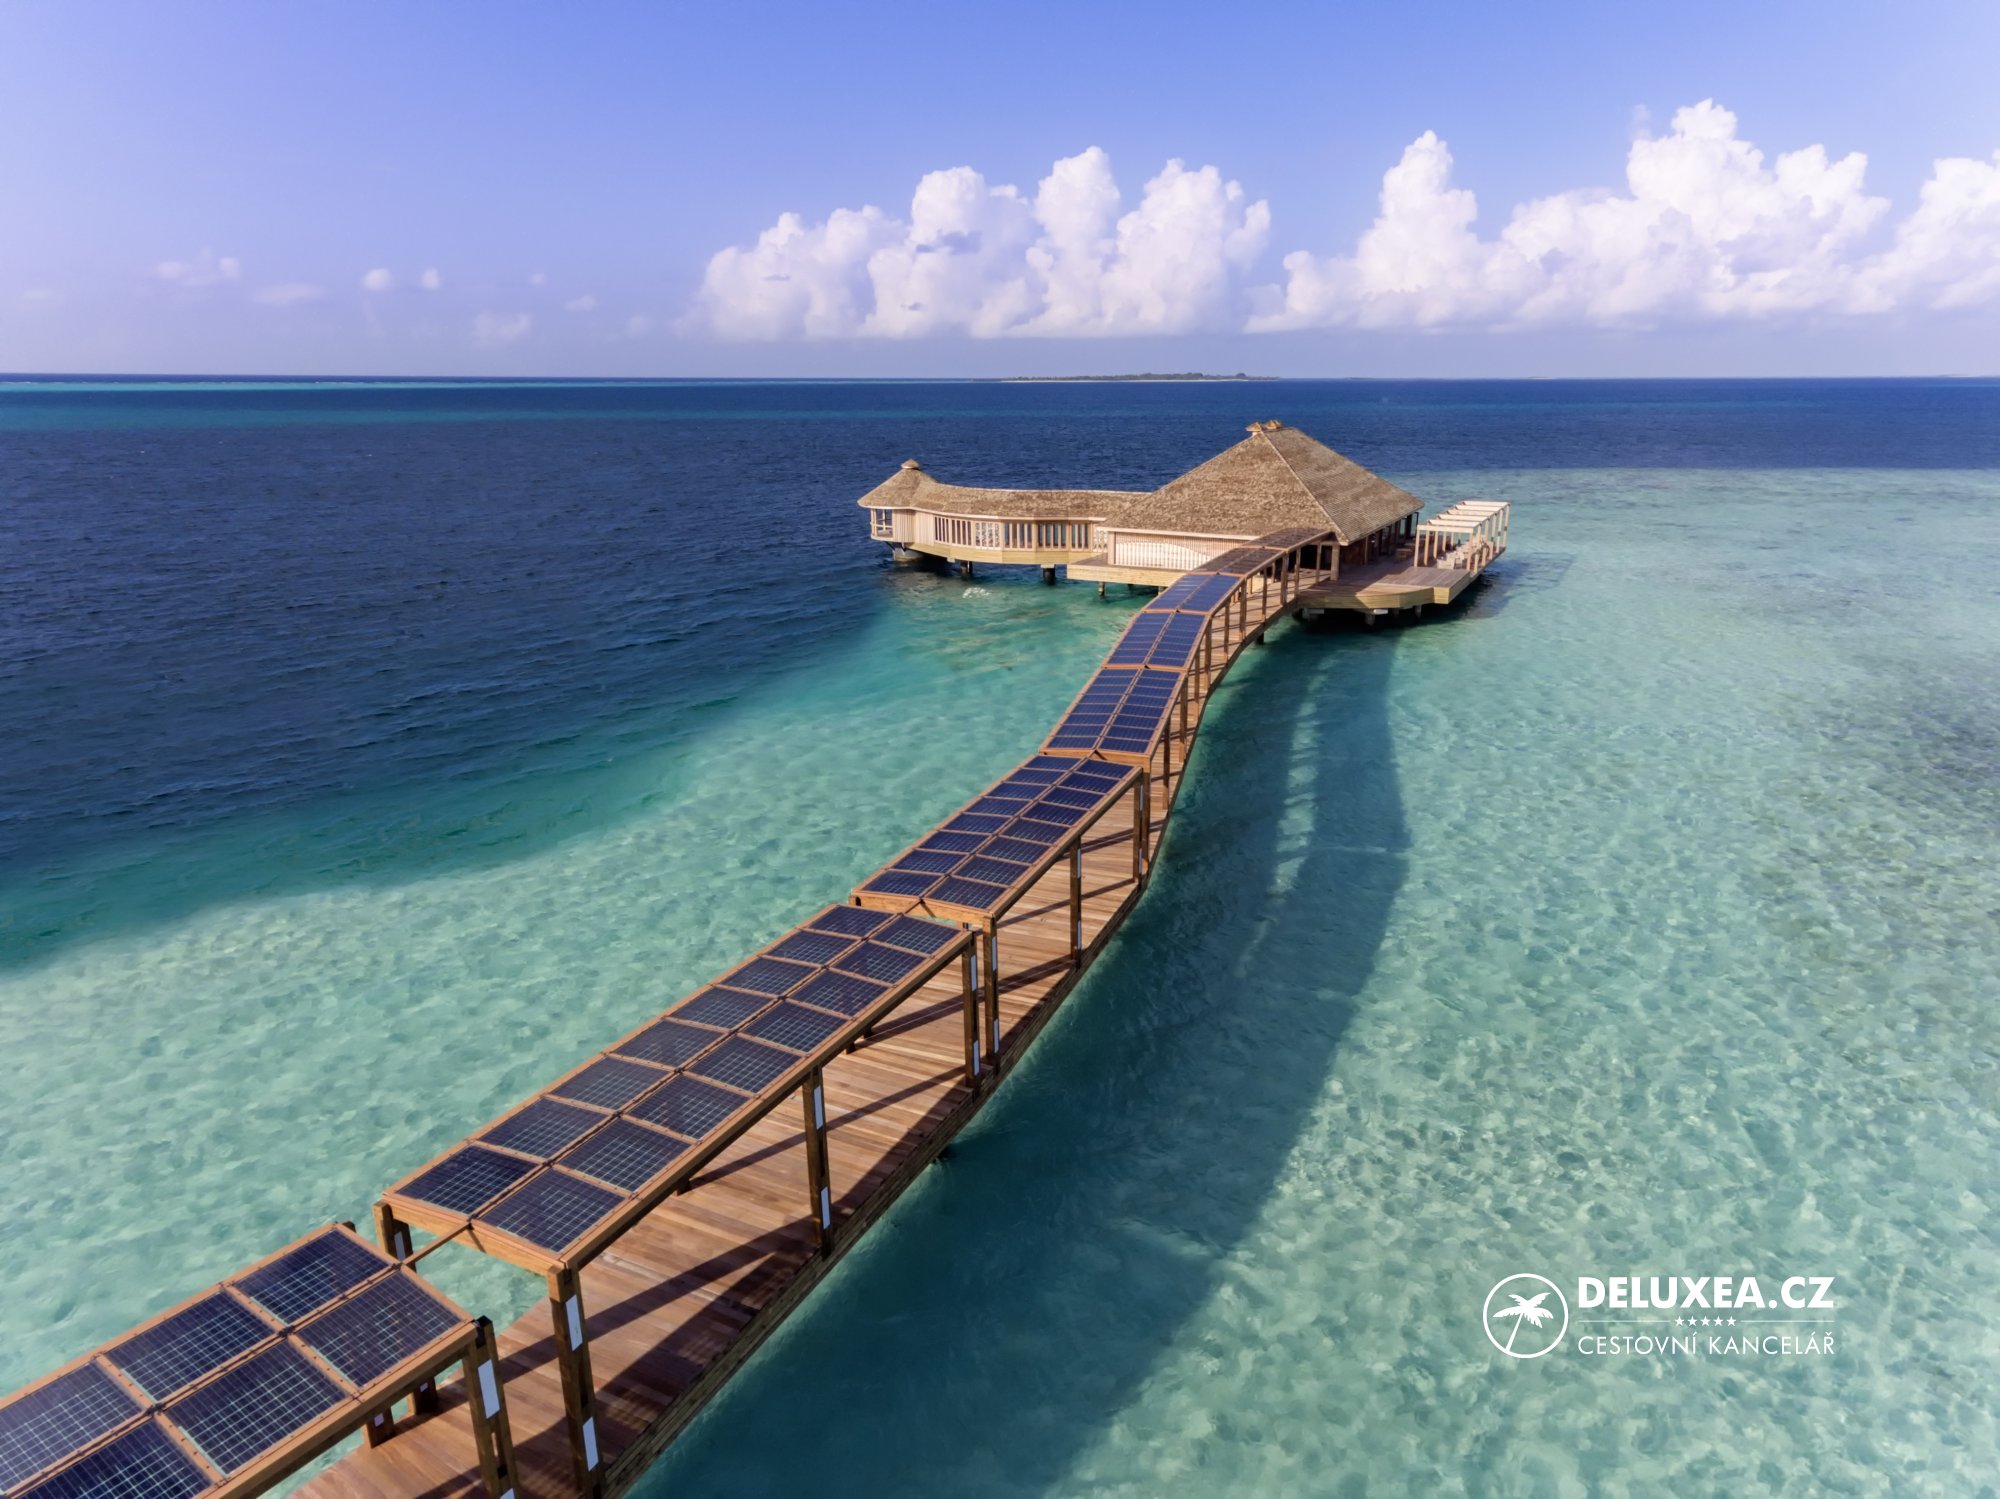 Sola luxury. Hurawalhi Мальдивы. Отель "Hurawalhi Island Resort ". Макунуду Исланд Мальдивы. Дангети Мальдивы.